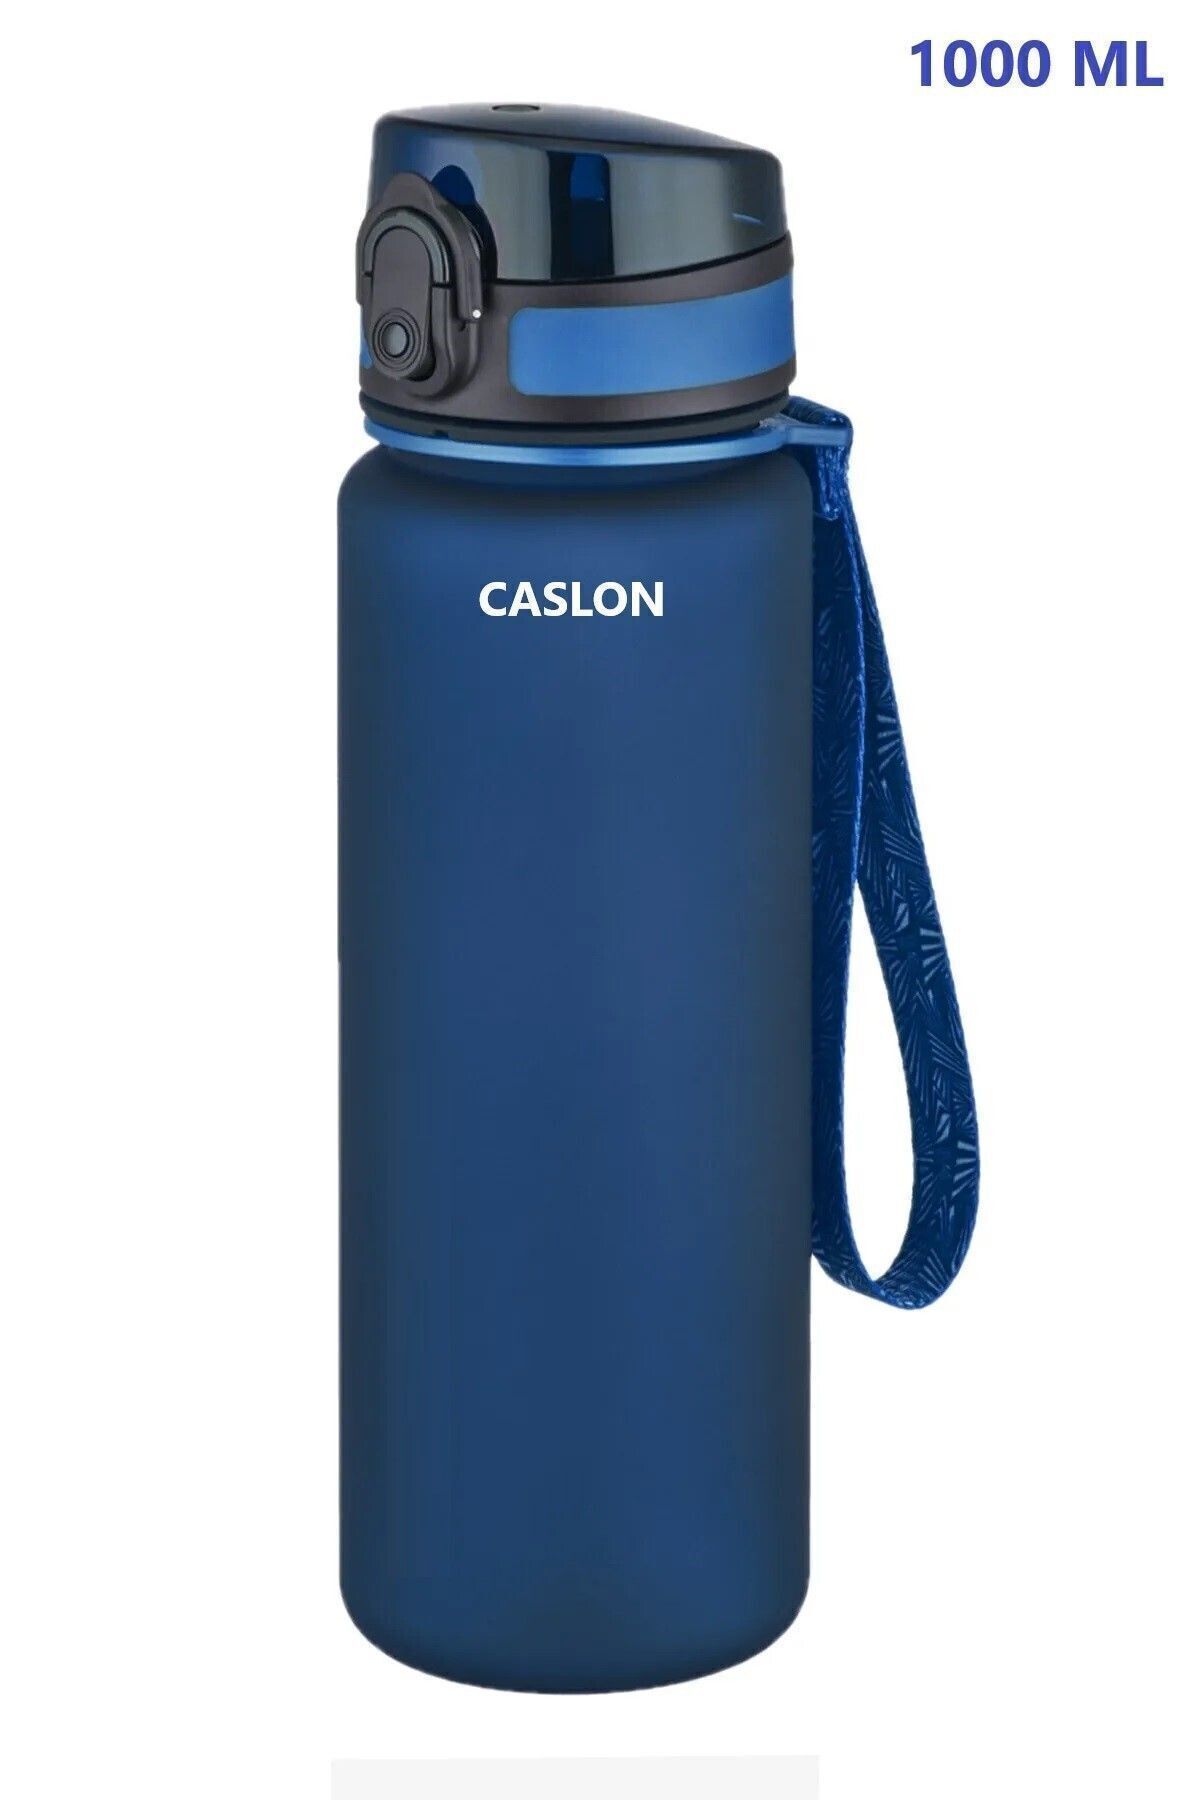 CASLON Su Matarası Tritan 1 Litre Koku Sızdırma Yapmaz Sporcu Matarası Su Şisesi Suluk Motivasyonel Uzspace